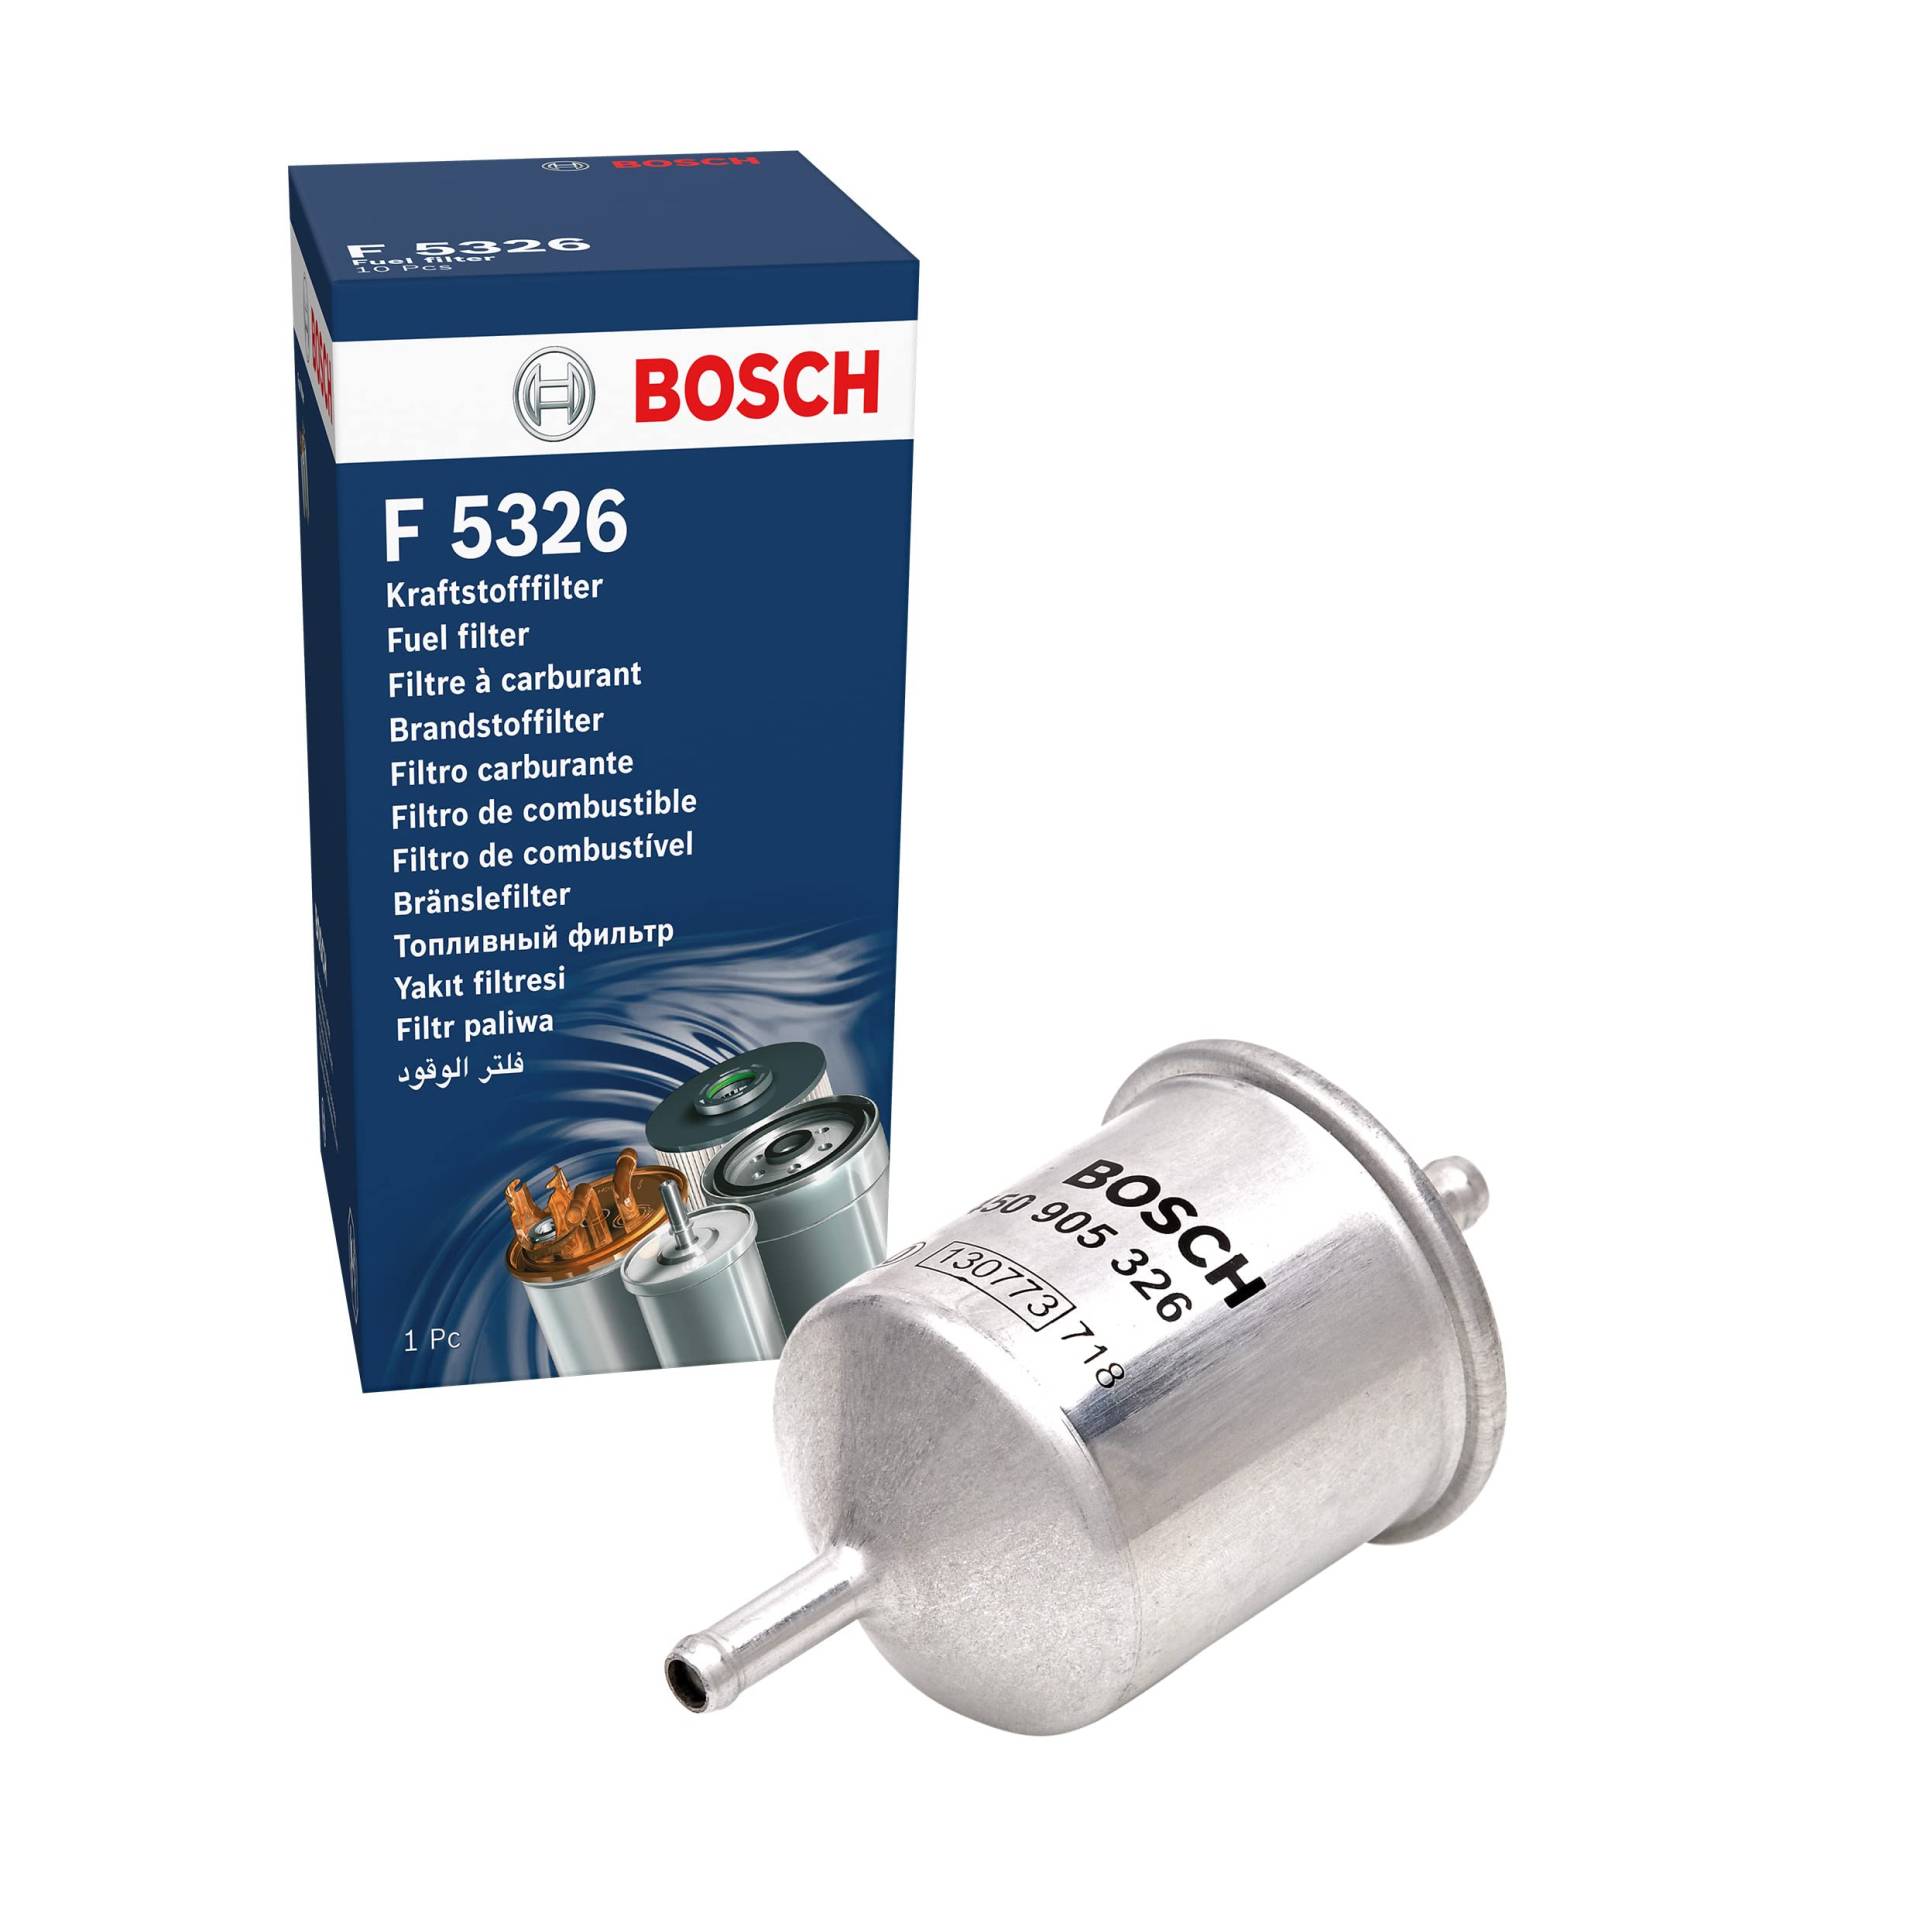 Bosch F5326 - Benzinfilter Auto von Bosch Automotive